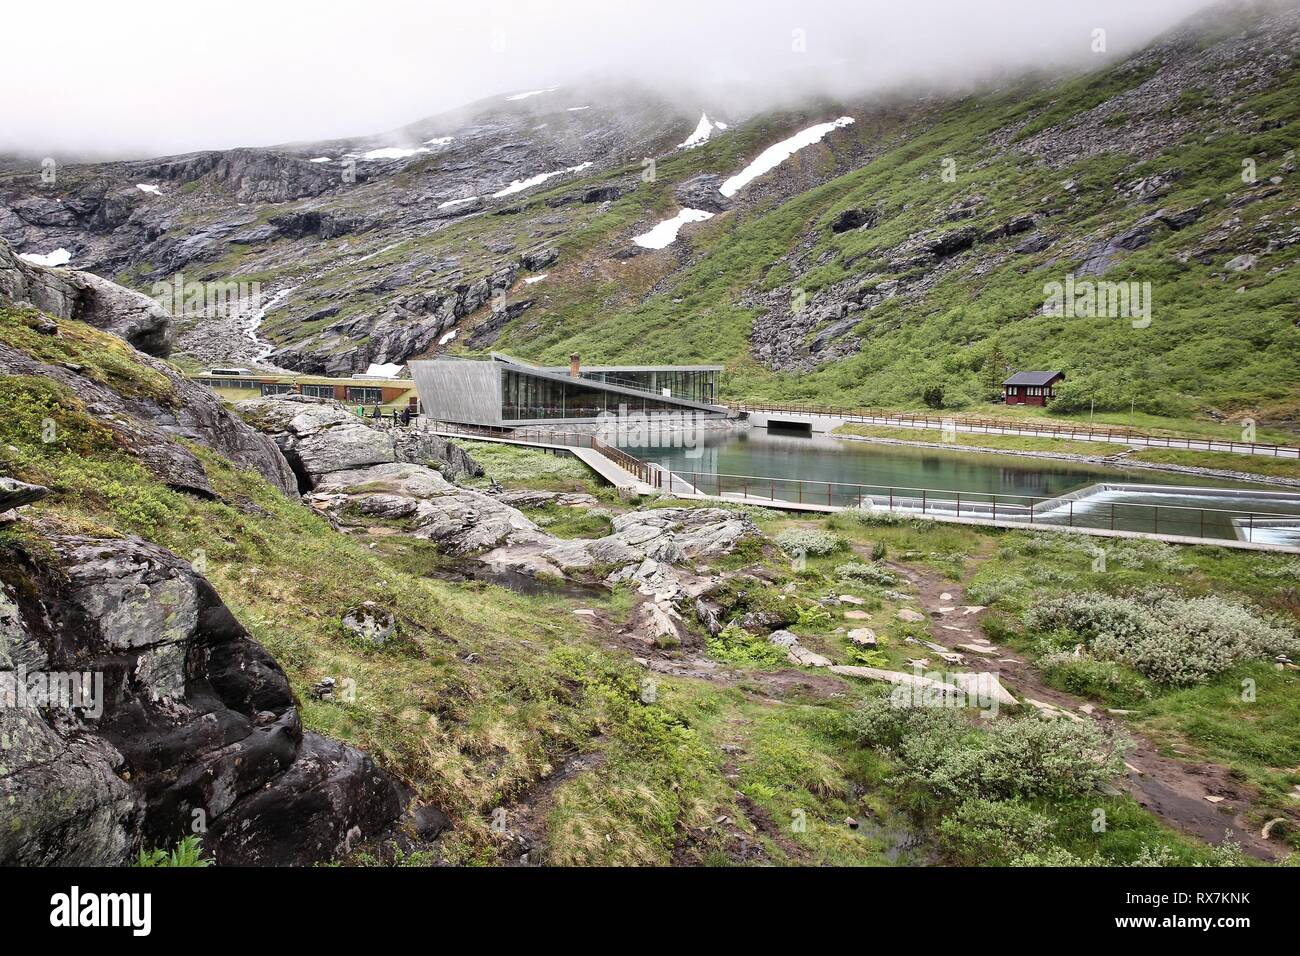 TROLLSTIGEN, Norvegia - Luglio 20, 2015: la gente visita moderno centro informazioni turistiche a Trollstigveien, Norvegia. I turisti stranieri ha speso circa 5 milioni di o Foto Stock